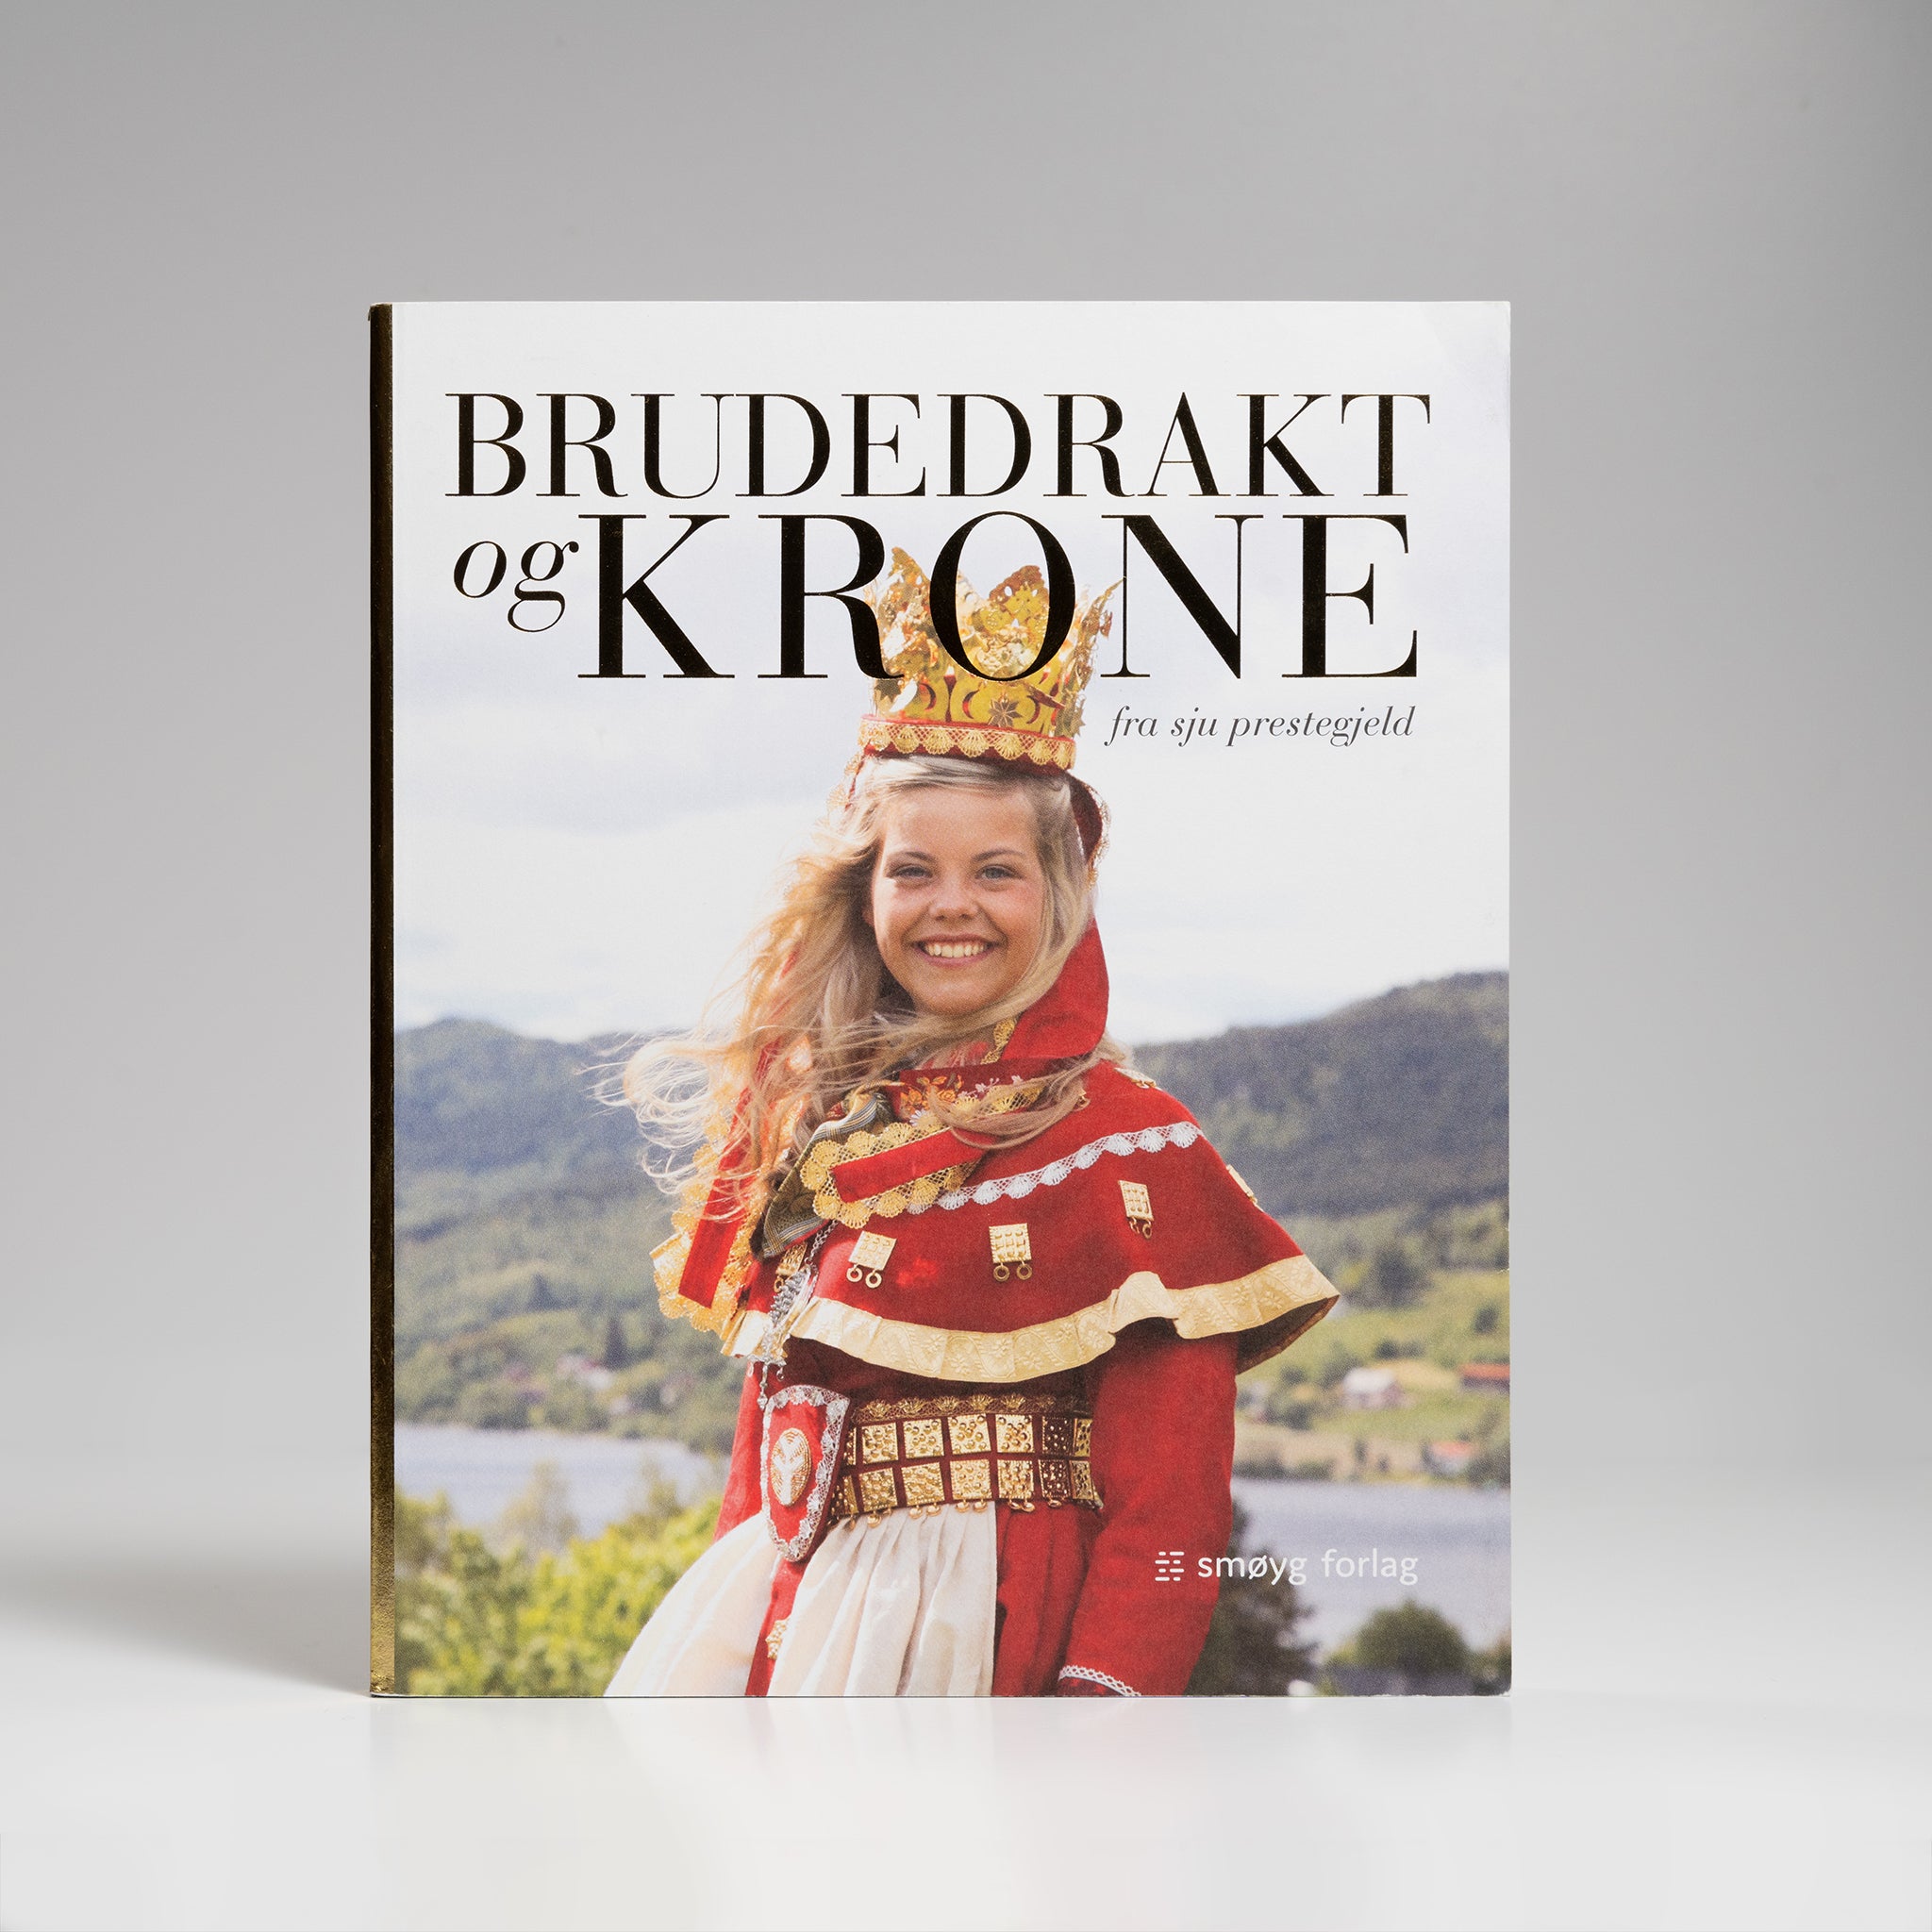 Brudedrakt Og Krone fra sju prestegjeld edited by Heidi Fossness